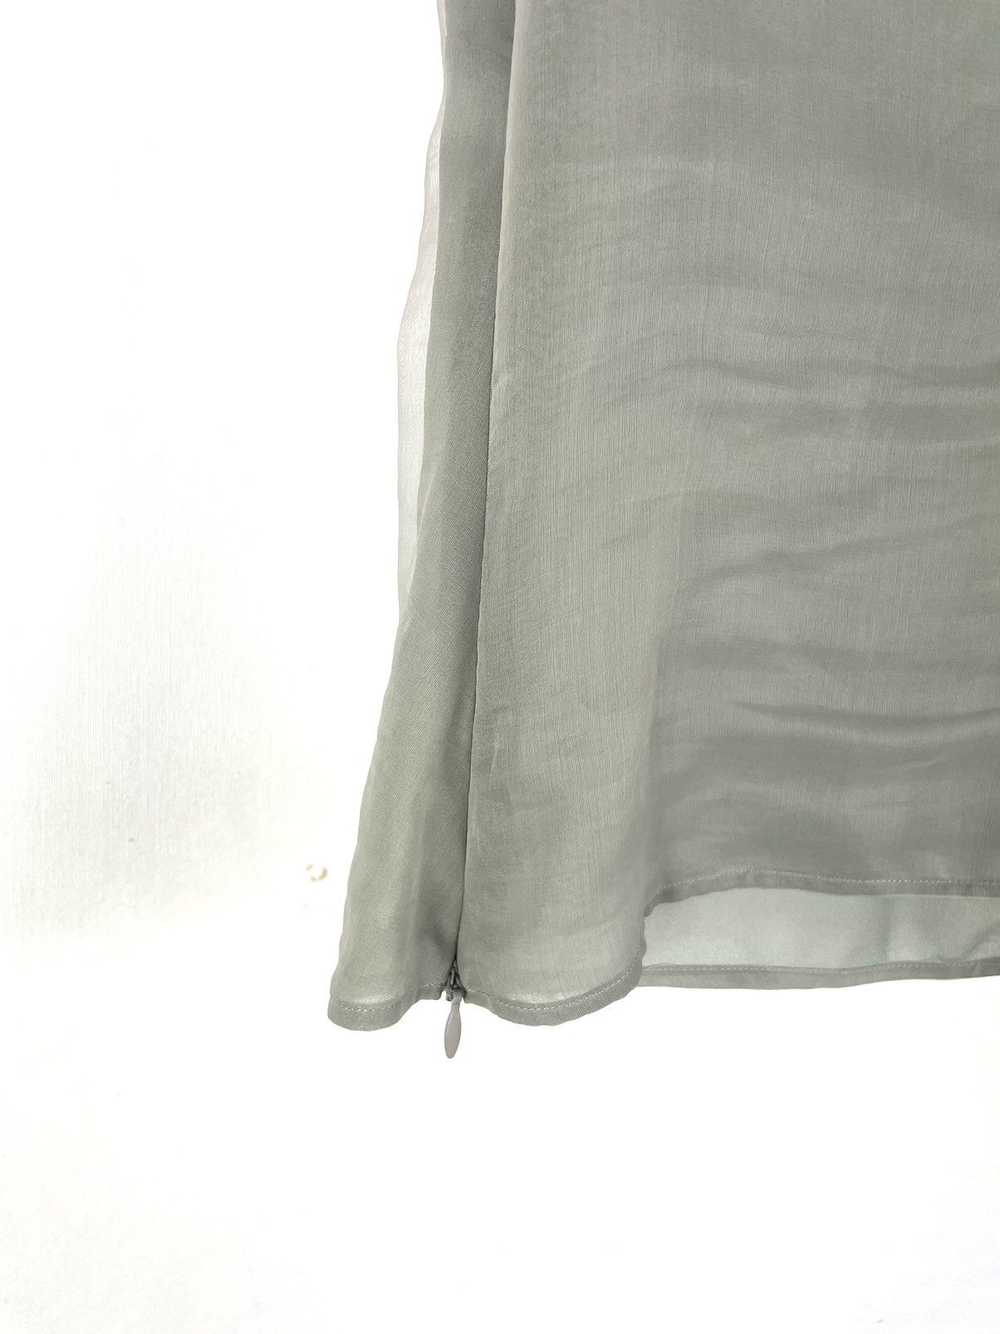 Giorgio Armani Giorgio Armani sleeveless silk top - image 3